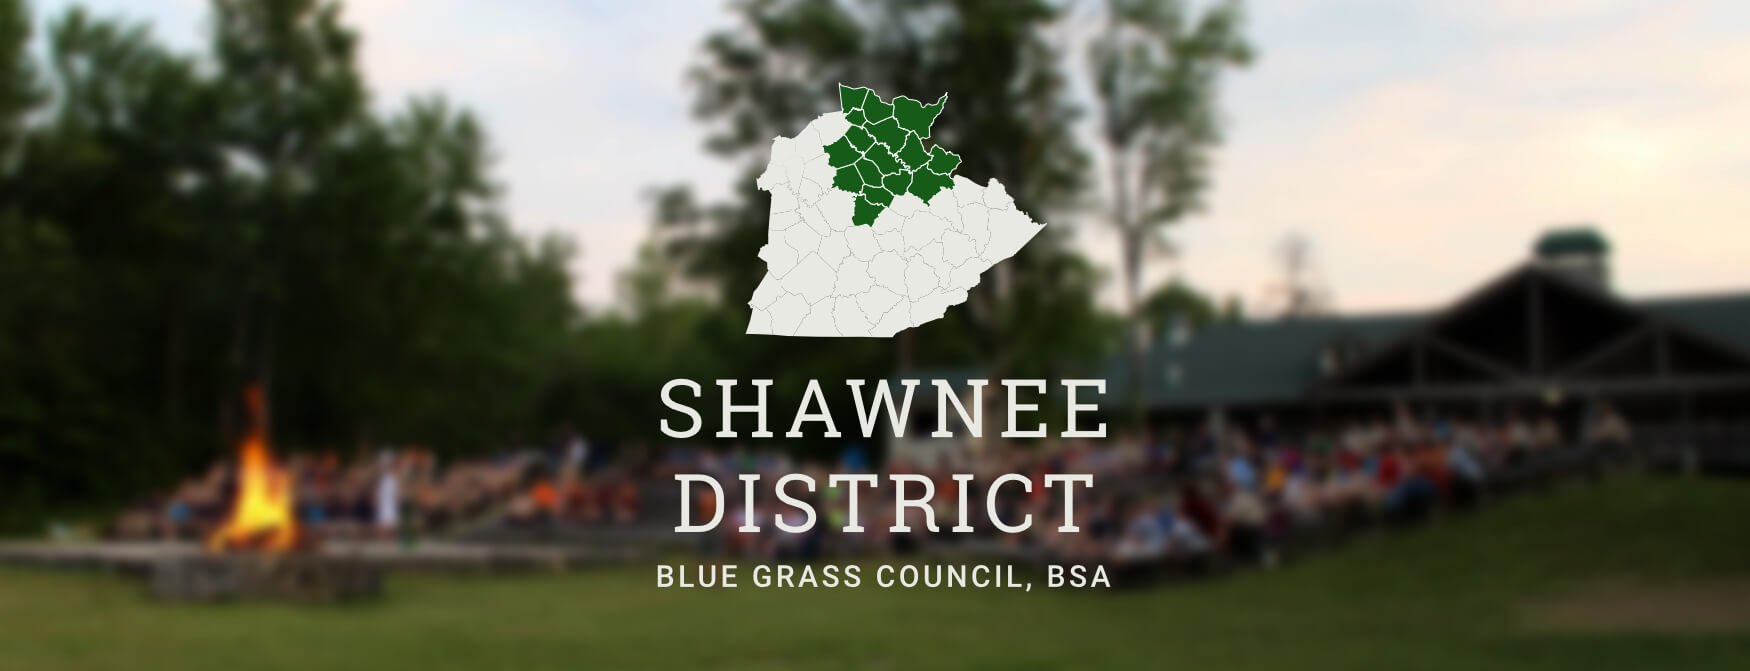 Shawnee District